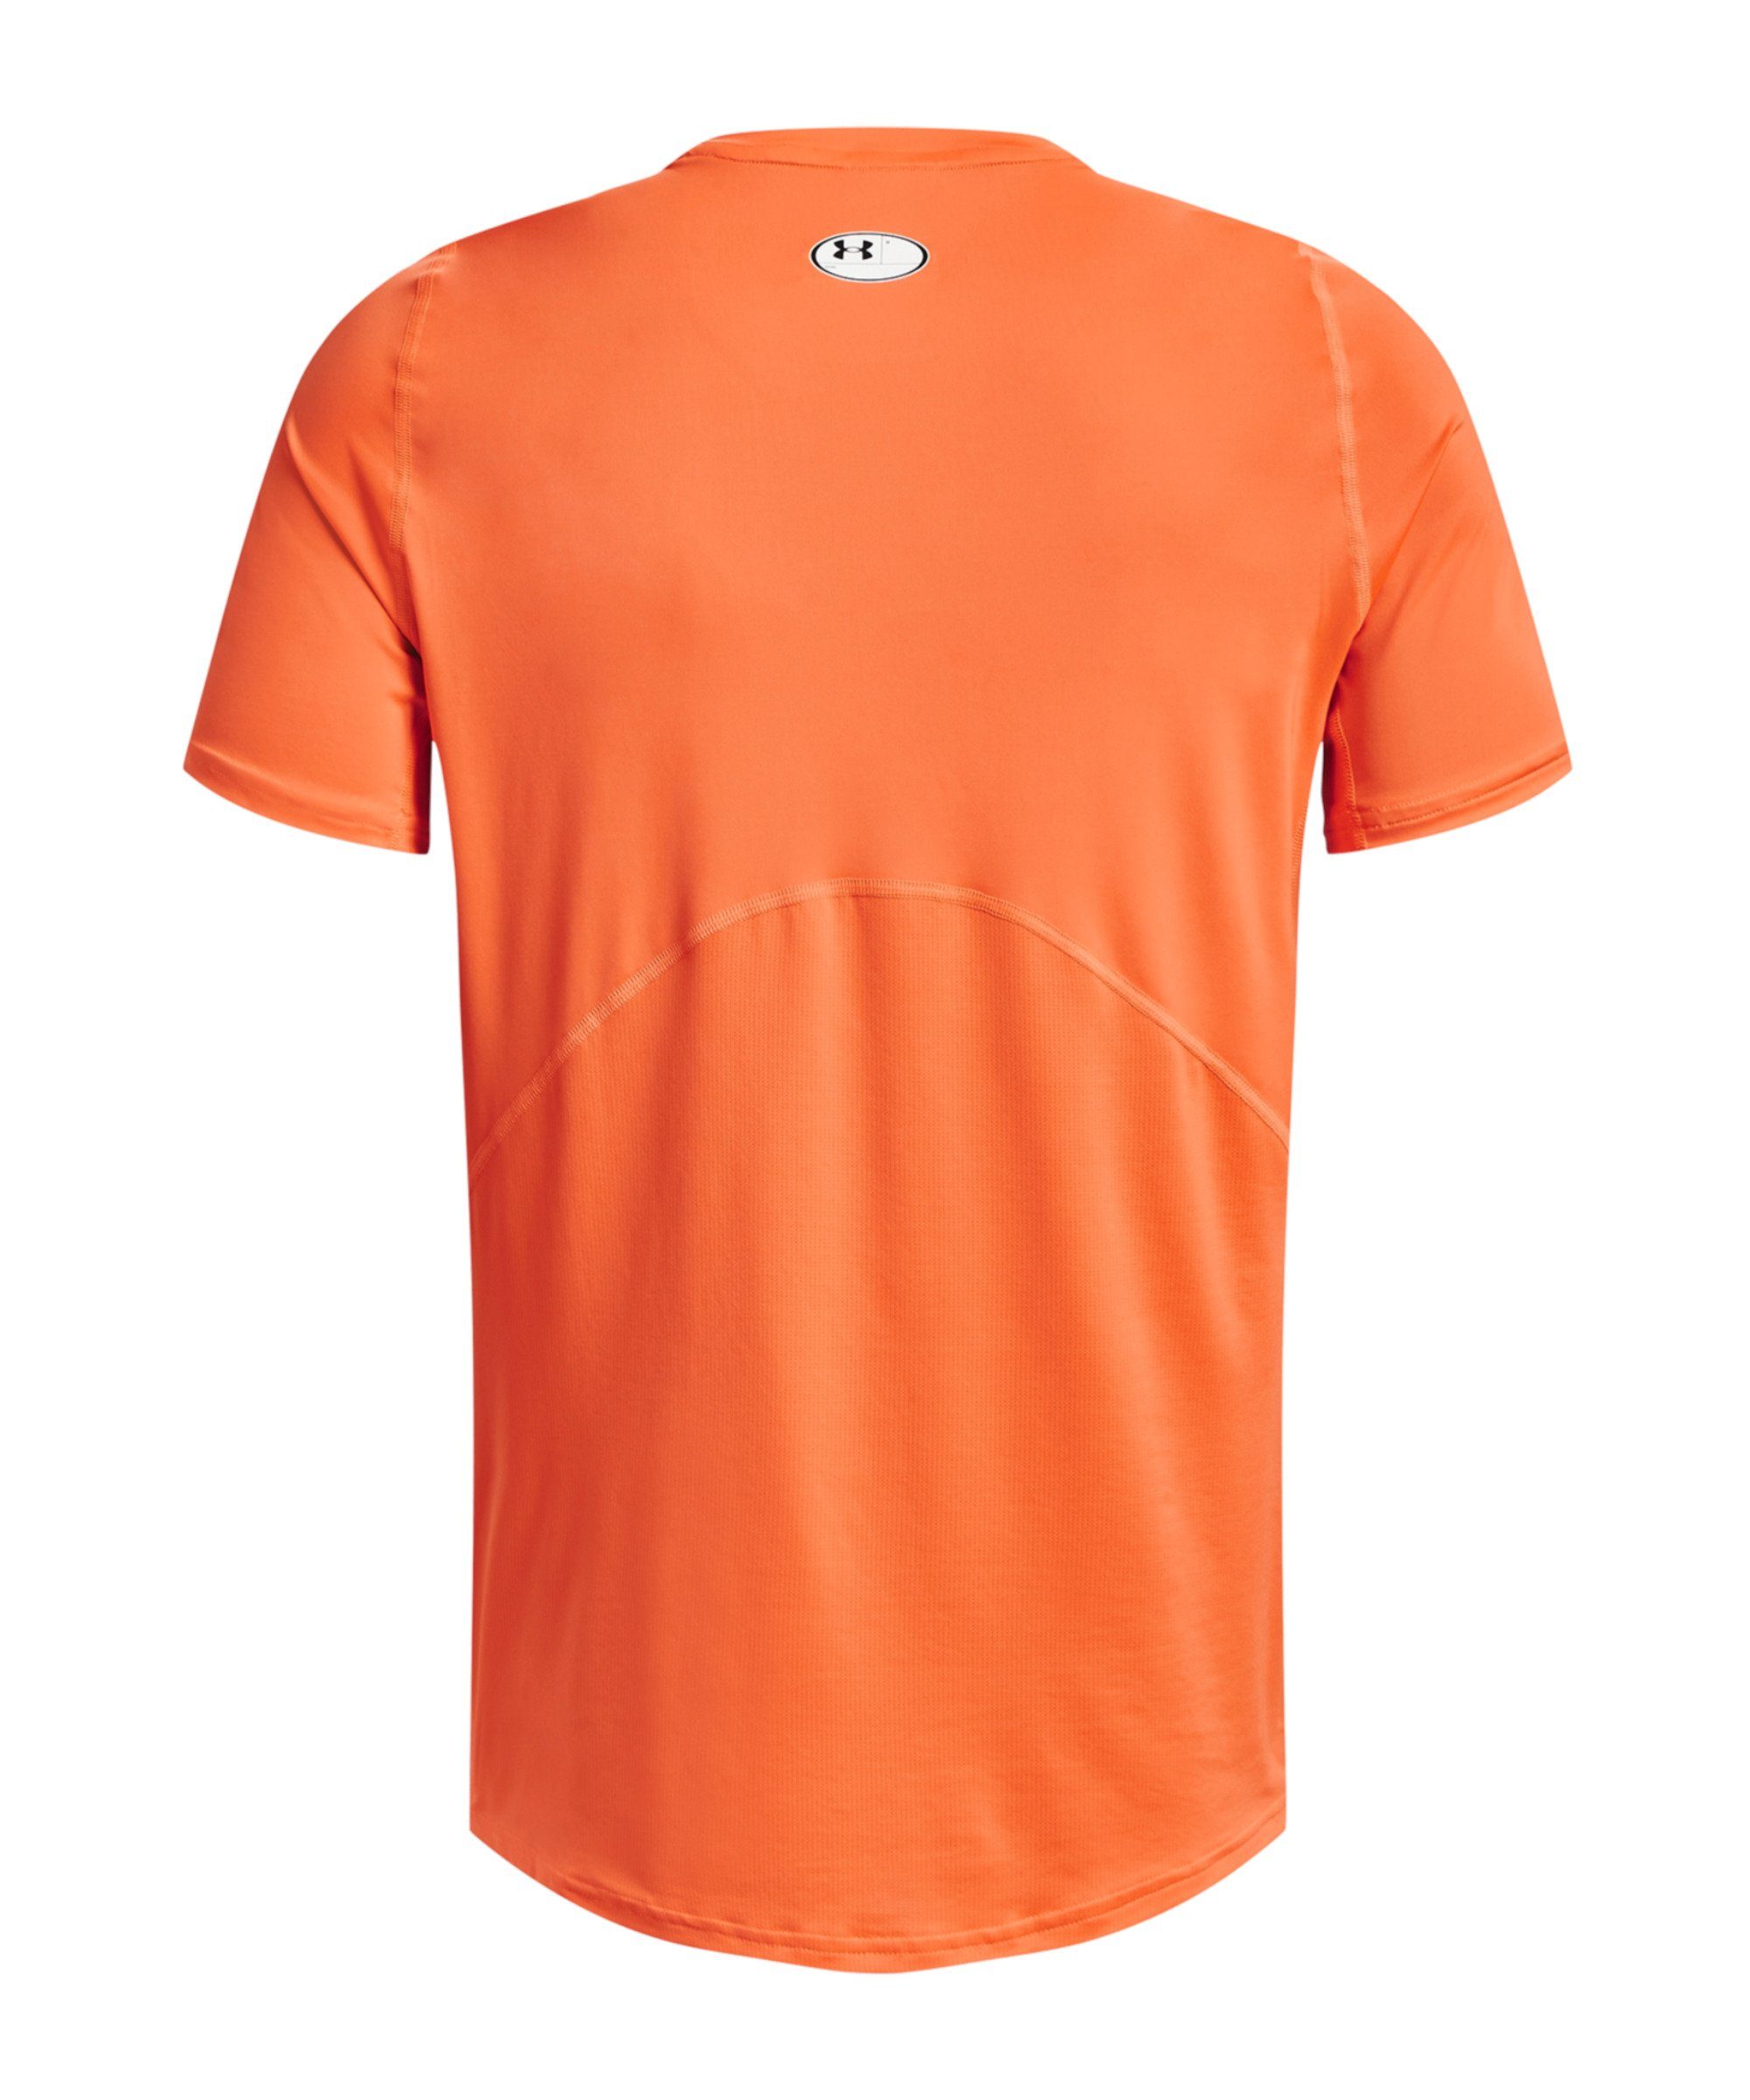 HG Fitted Under orangeschwarz Armour® T-Shirt T-Shirt default